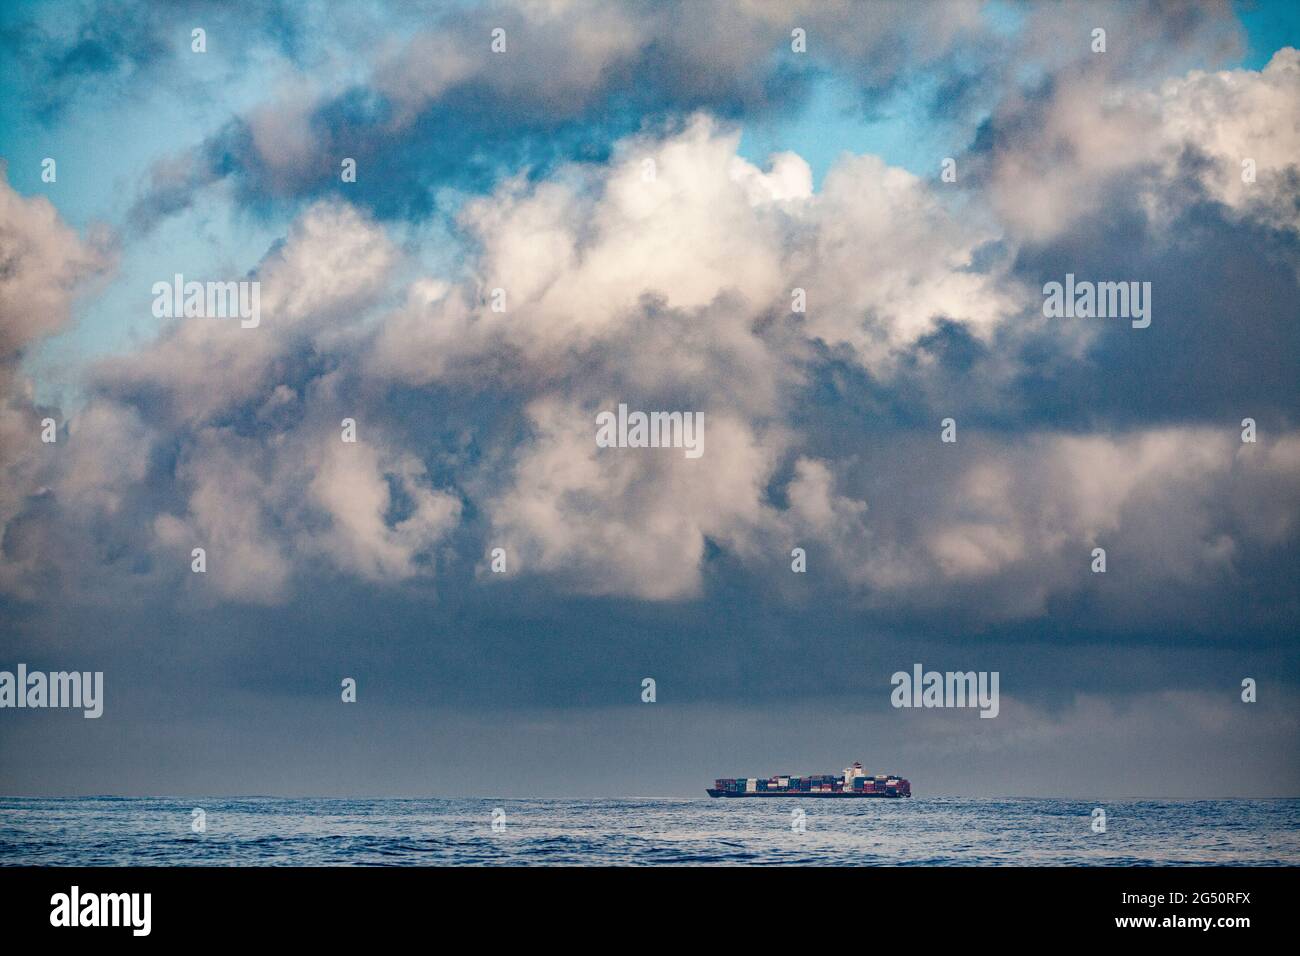 Riesiges Containerschiff in den Weiten des pazifischen Ozeans mit dramatischer Wolkenlandschaft eines bevorstehenden Sturms Stockfoto